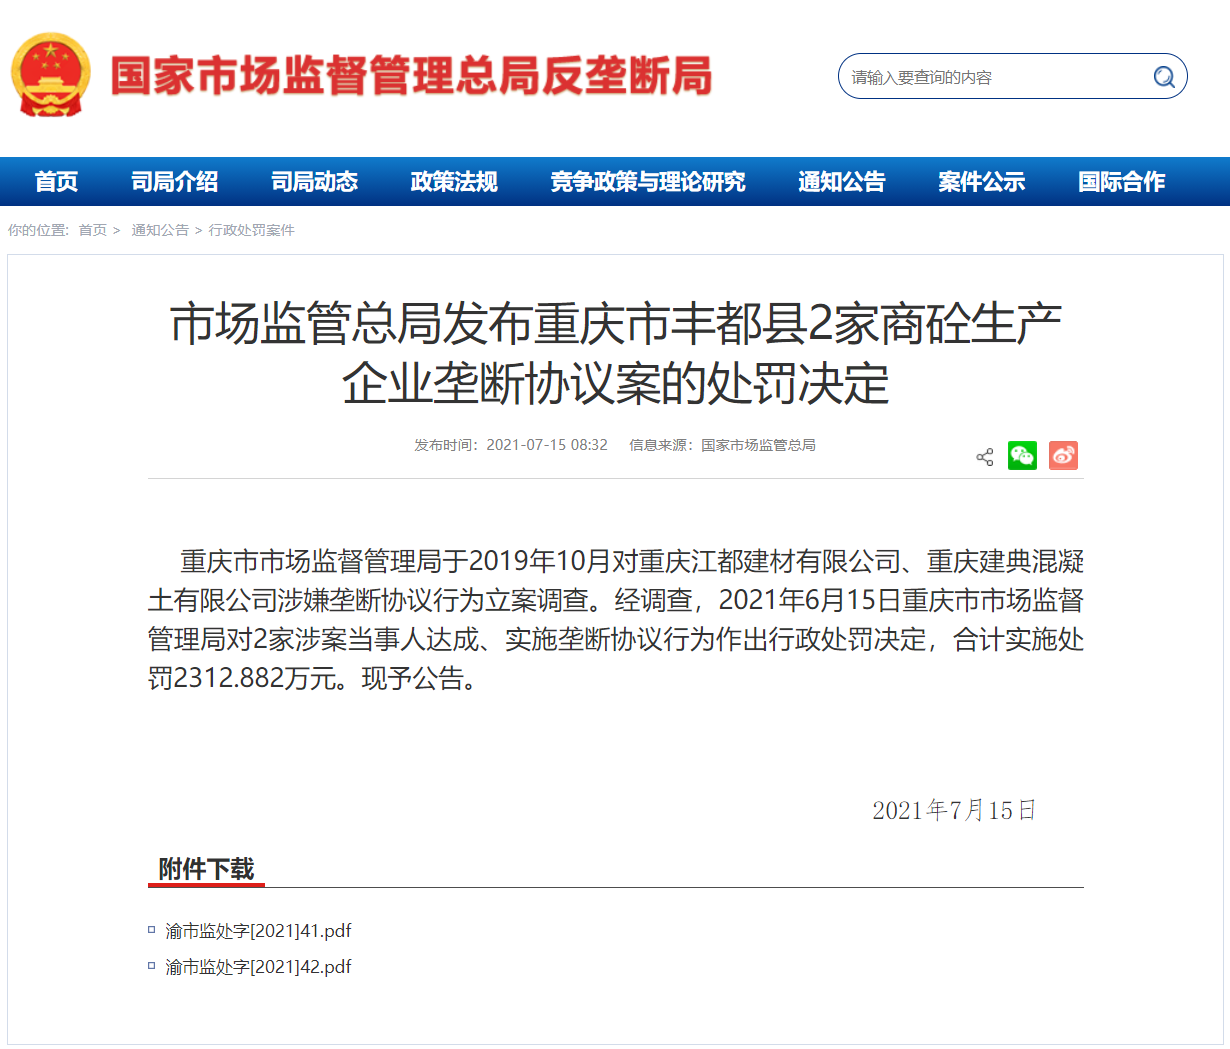 市场监管总局发布重庆市丰都县2家商砼生产企业垄断协议案的处罚决定